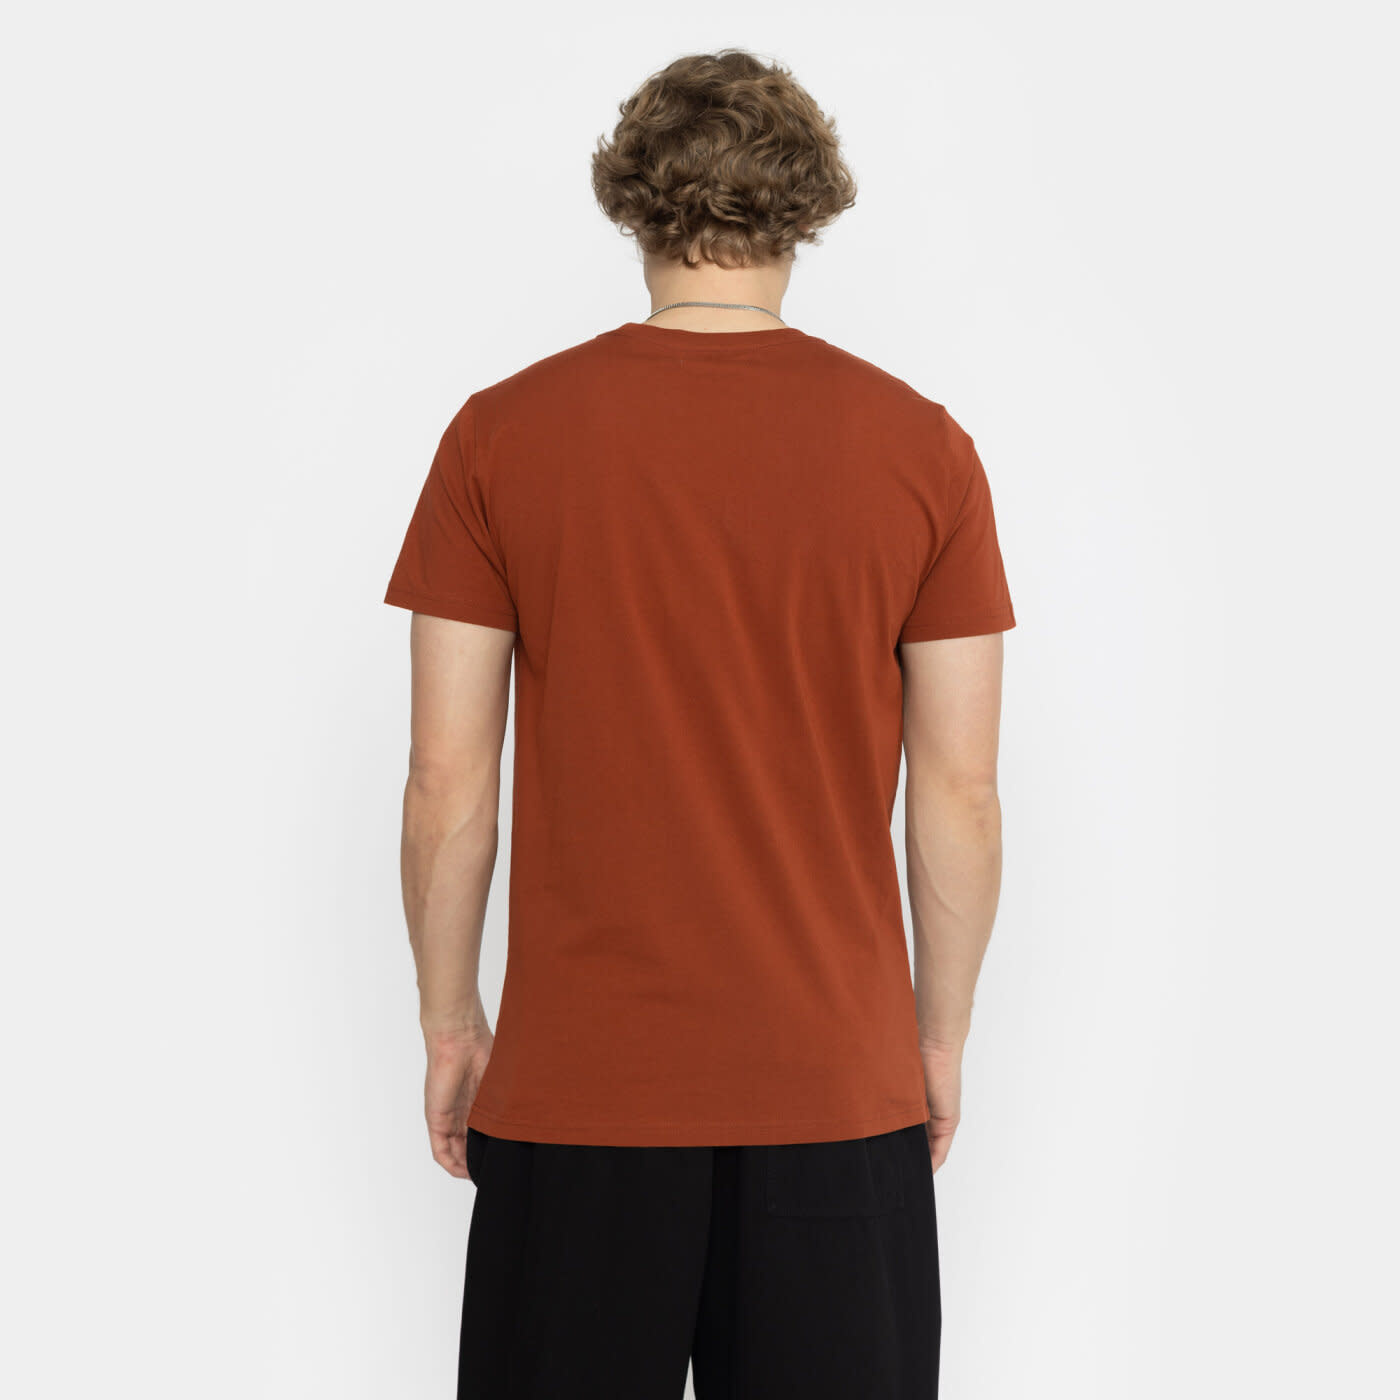 RVLT RVLT, 1337 WUN T-Shirt, darkred, S